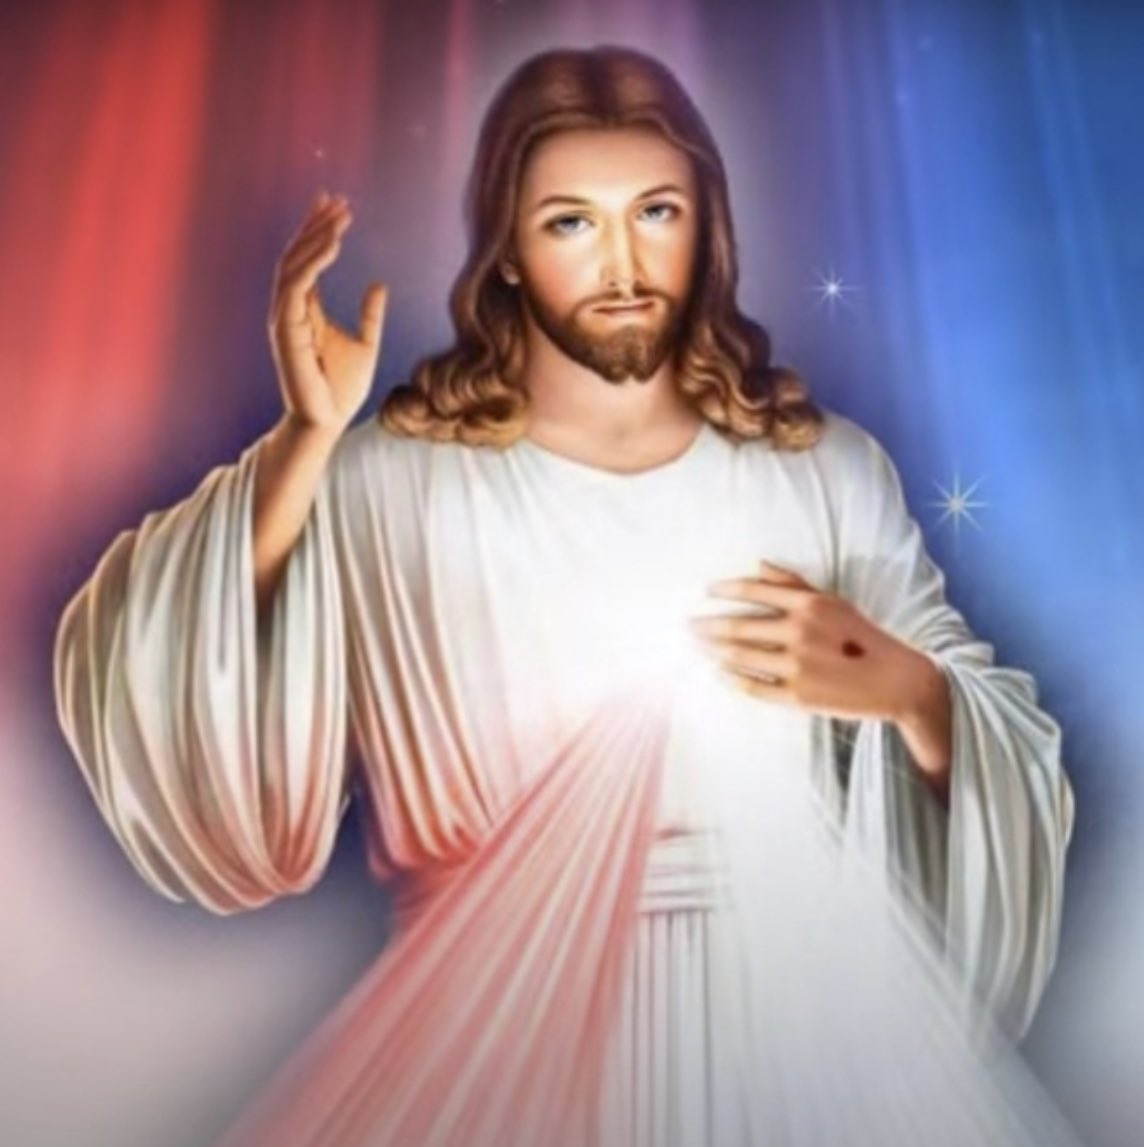 ¡Aprende a rezar la Coronilla de la Misericordia! ♥️

Clic en el link: acortar.link/QdX182

#CoronillaDeLaMisericordia #Amor #Jesus #Dios #Oracion